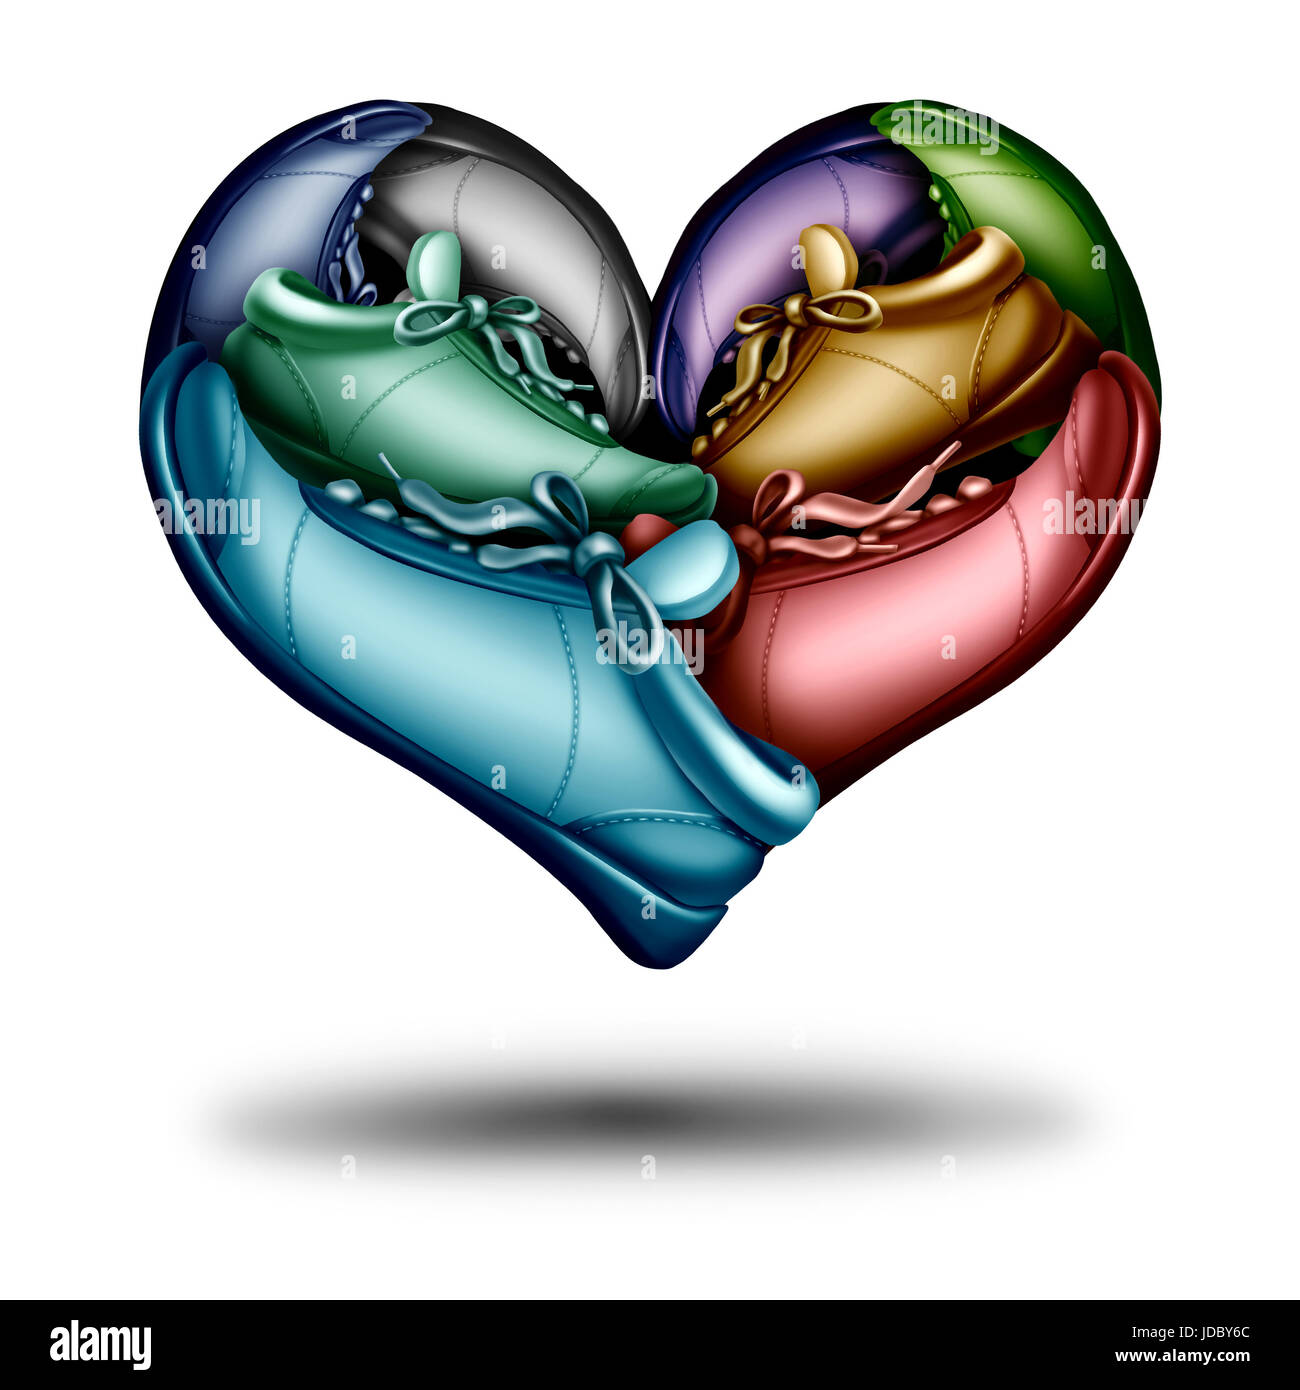 L'exécution de l'amour comme symbole d'un groupe de runner chaussures ou des chaussures en forme de cœur comme une icône de l'exercice de jogging dans un style 3D illustration. Banque D'Images